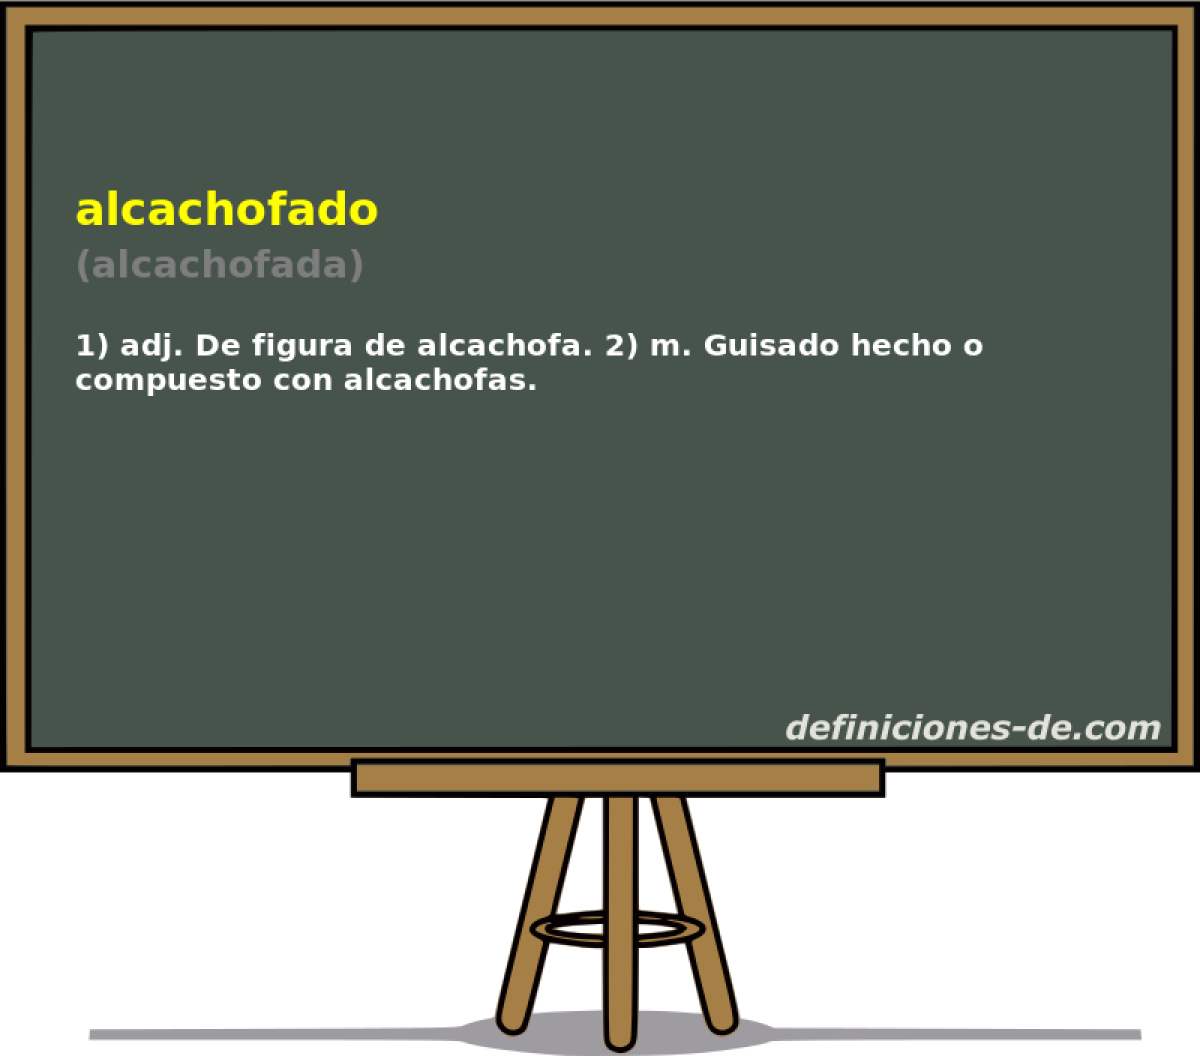 alcachofado (alcachofada)